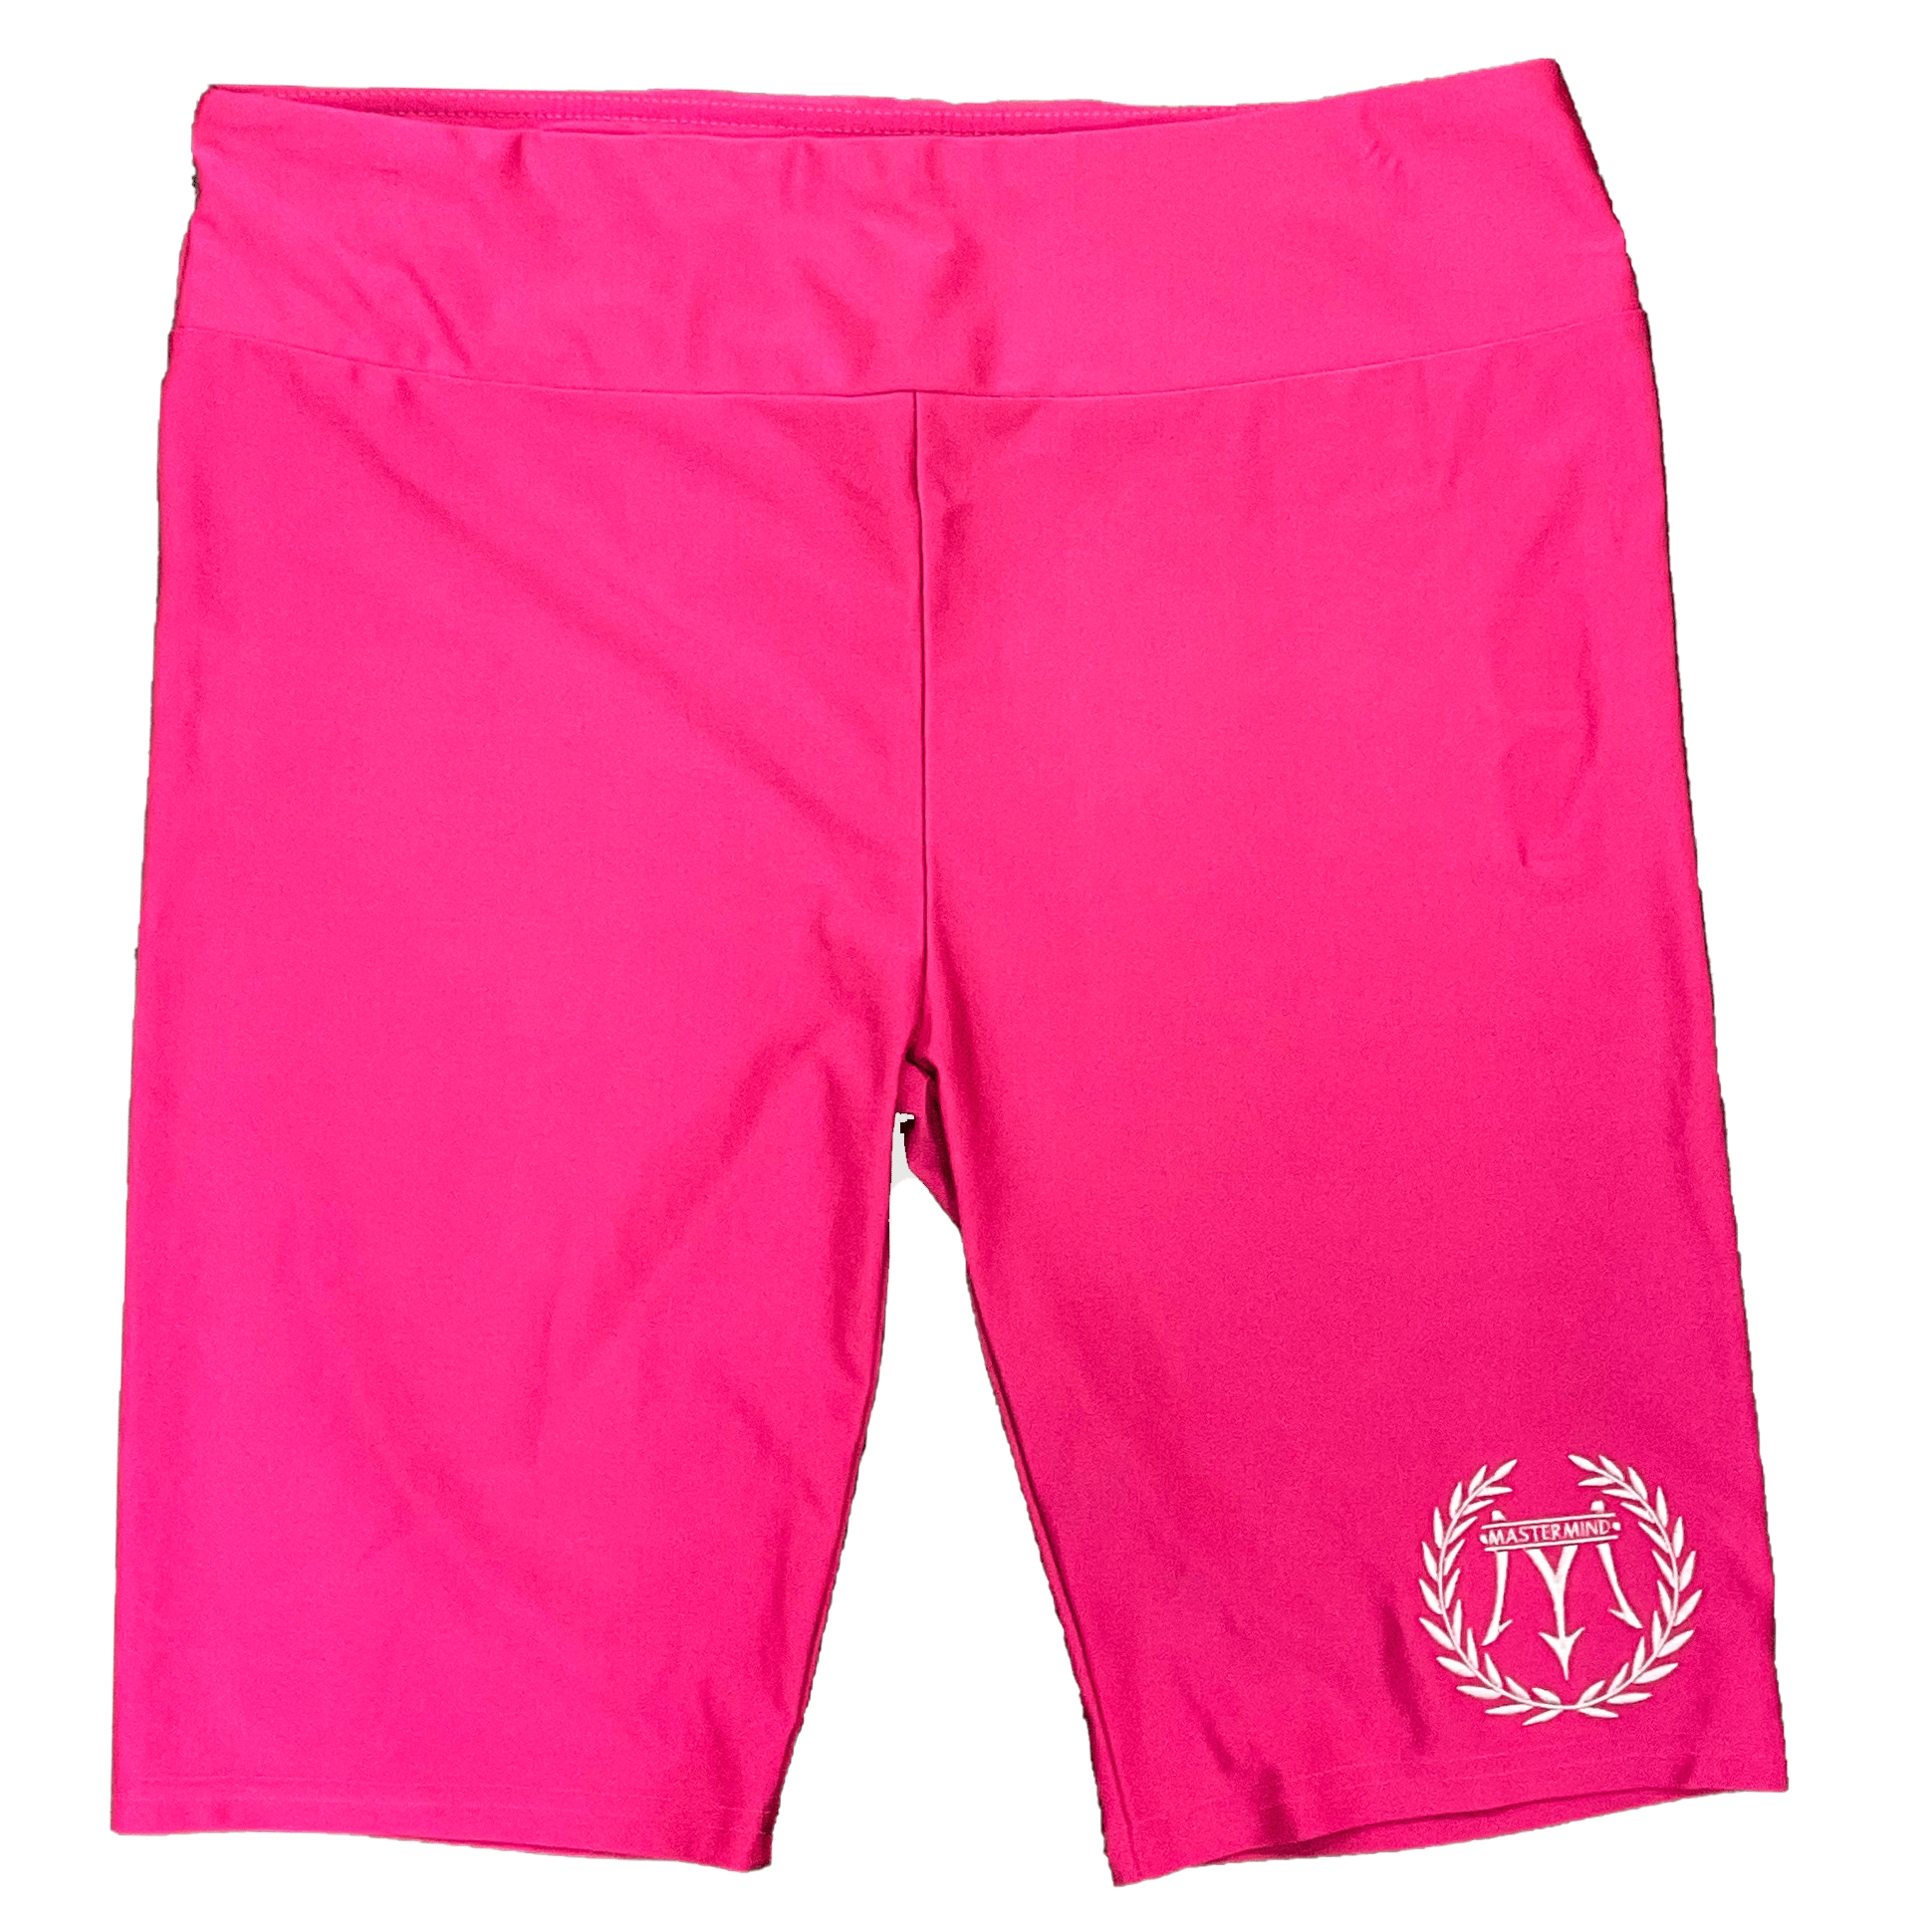 Mastermind315 pink Mastermind Biker Shorts